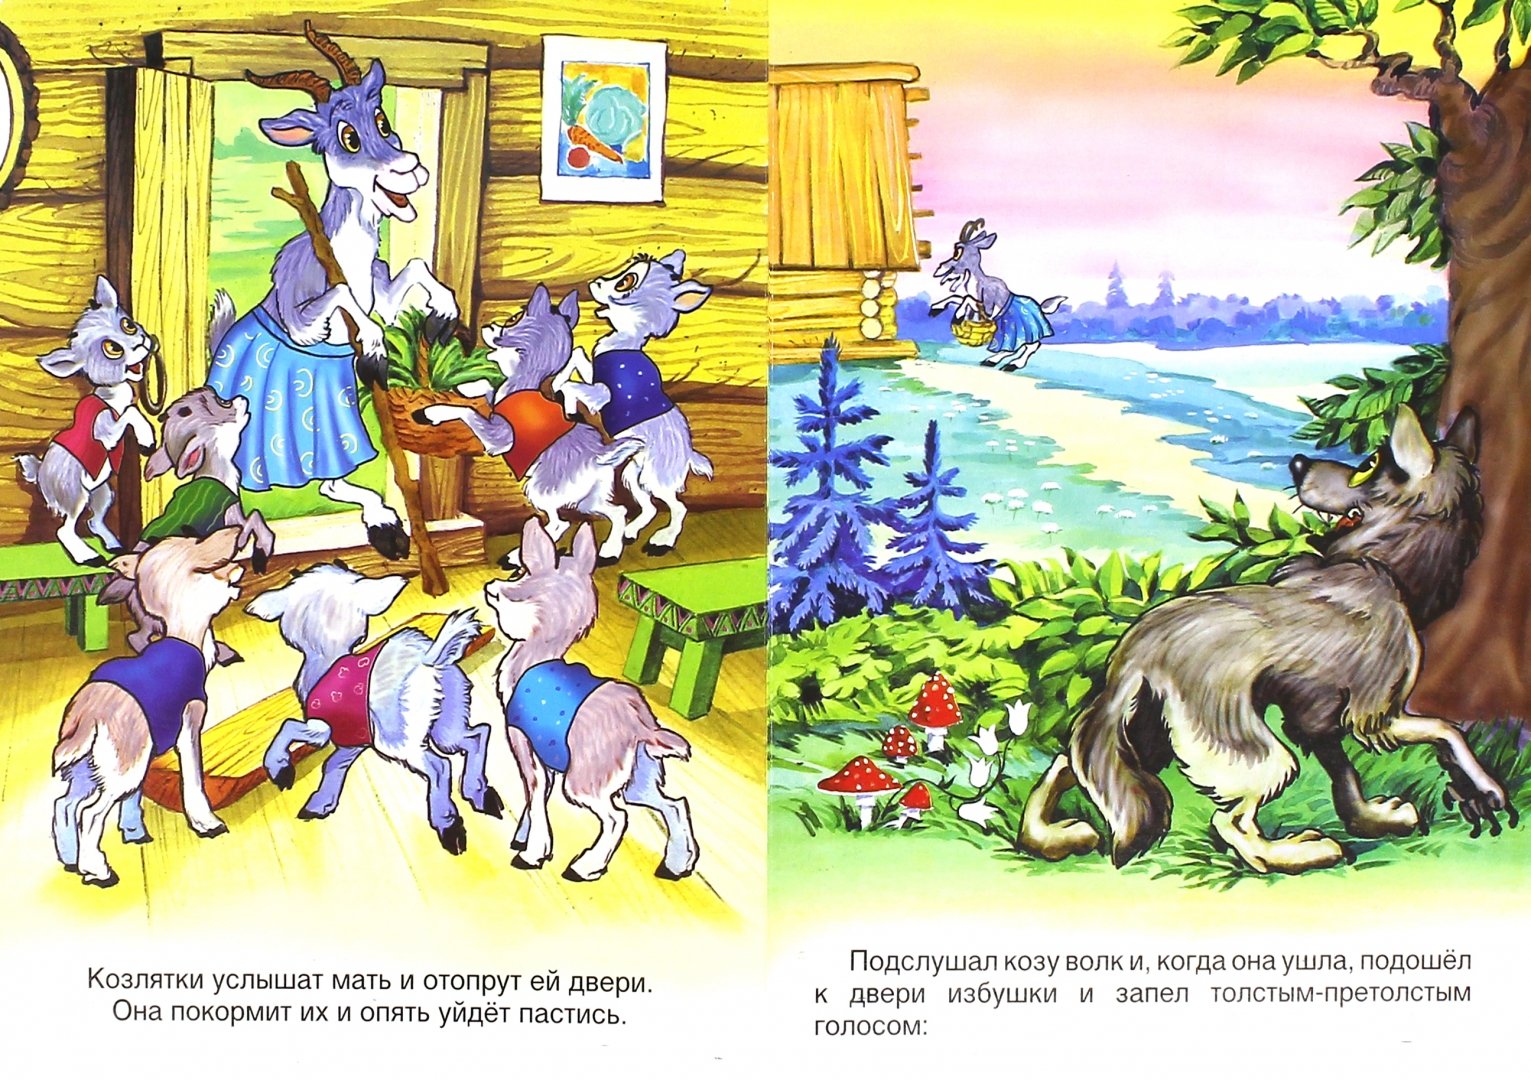 Иллюстрация 1 из 4 для Козлятки и волк | Лабиринт - книги. Источник: Лабиринт